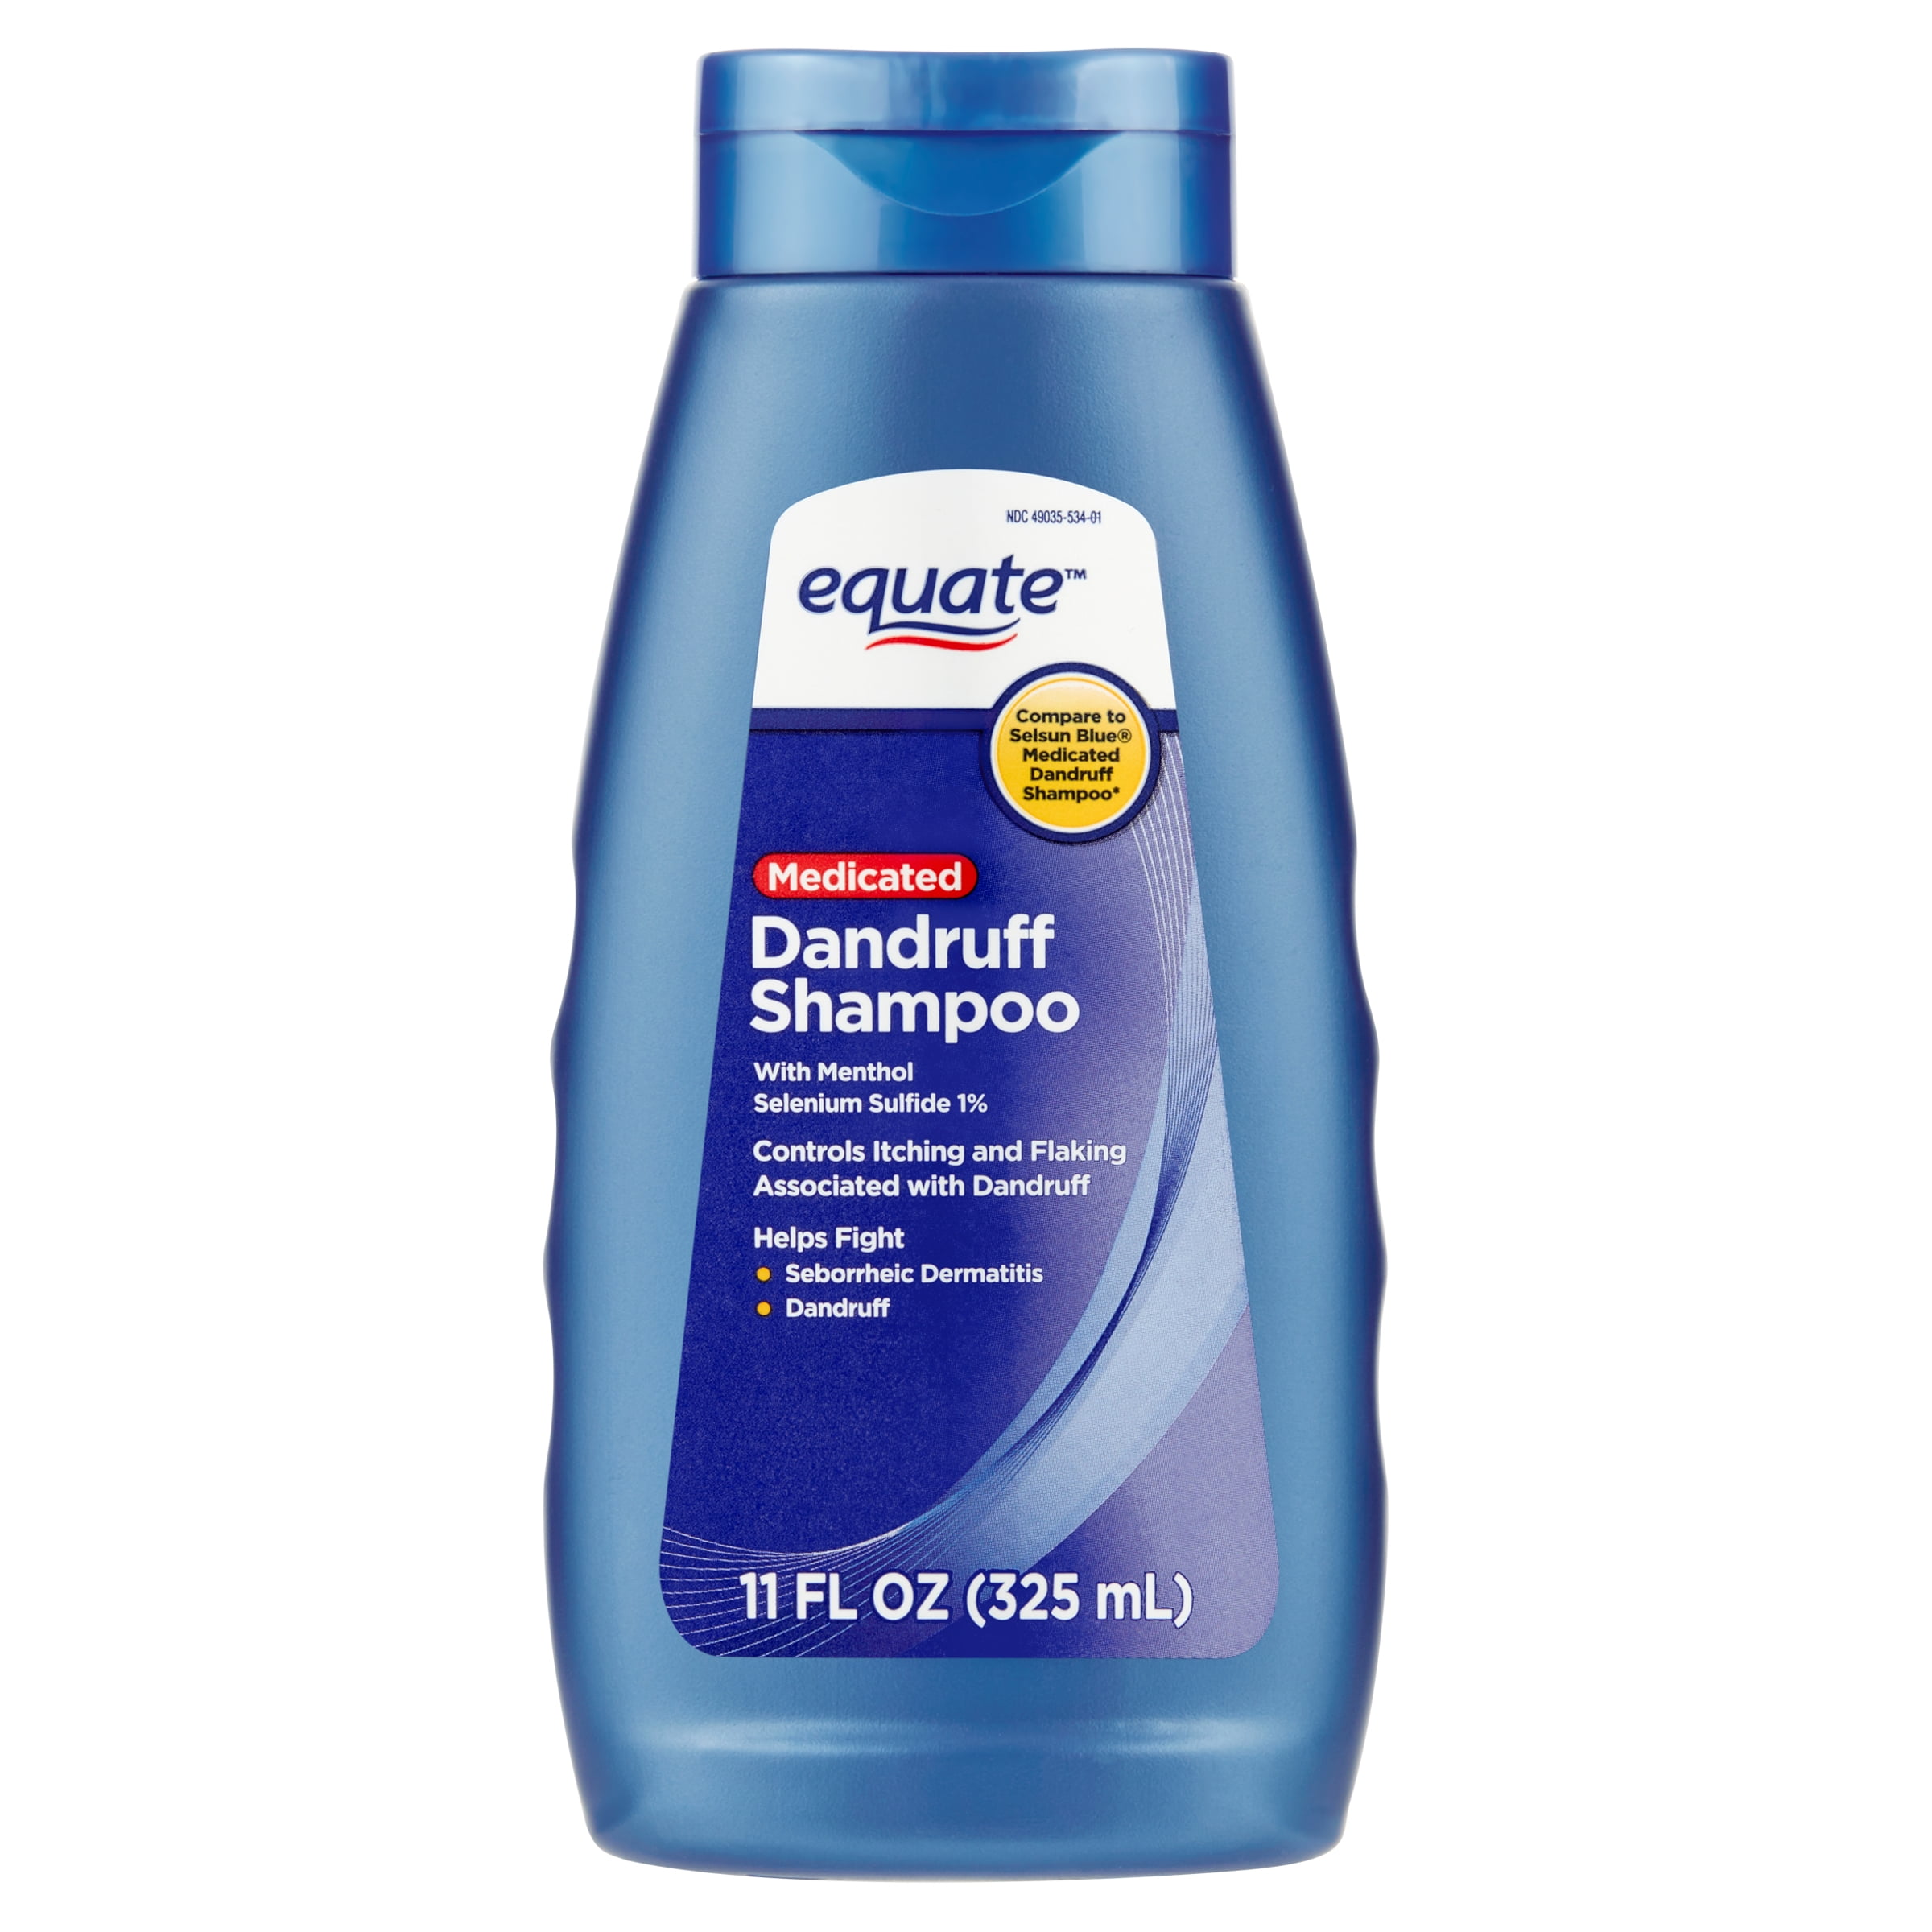 samtale halstørklæde hegn Equate Medicated Dandruff Shampoo with Selenium Sulfide 1%, 11 Fl oz -  Walmart.com